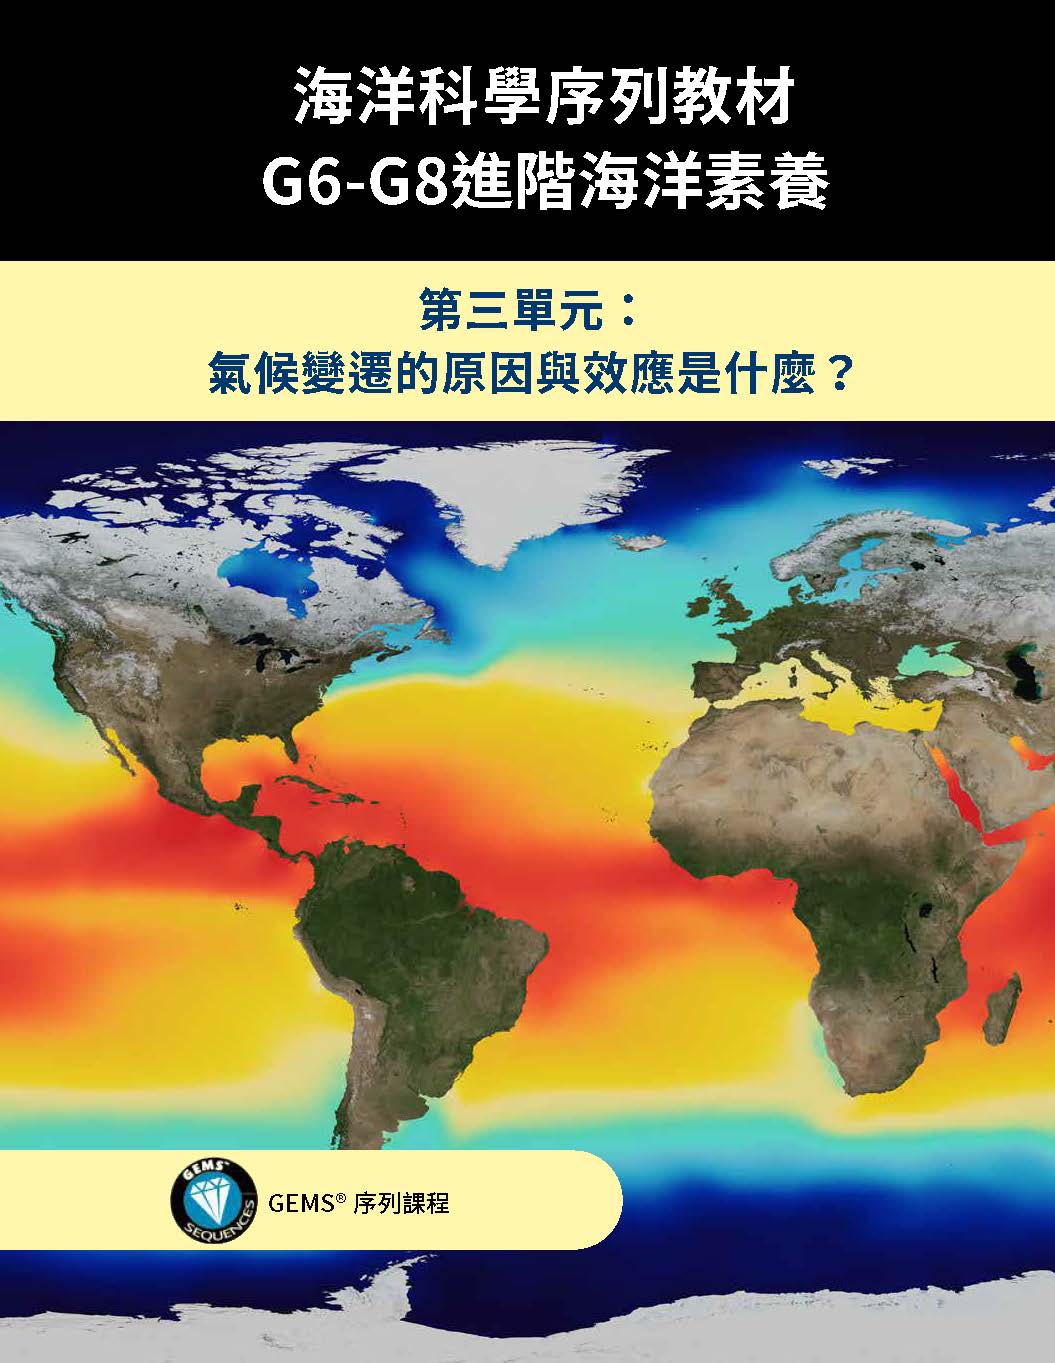 海洋科學序列教材: G6-G8進階海洋素養. 第三單元, 氣候變遷的原因與效應是什麼?